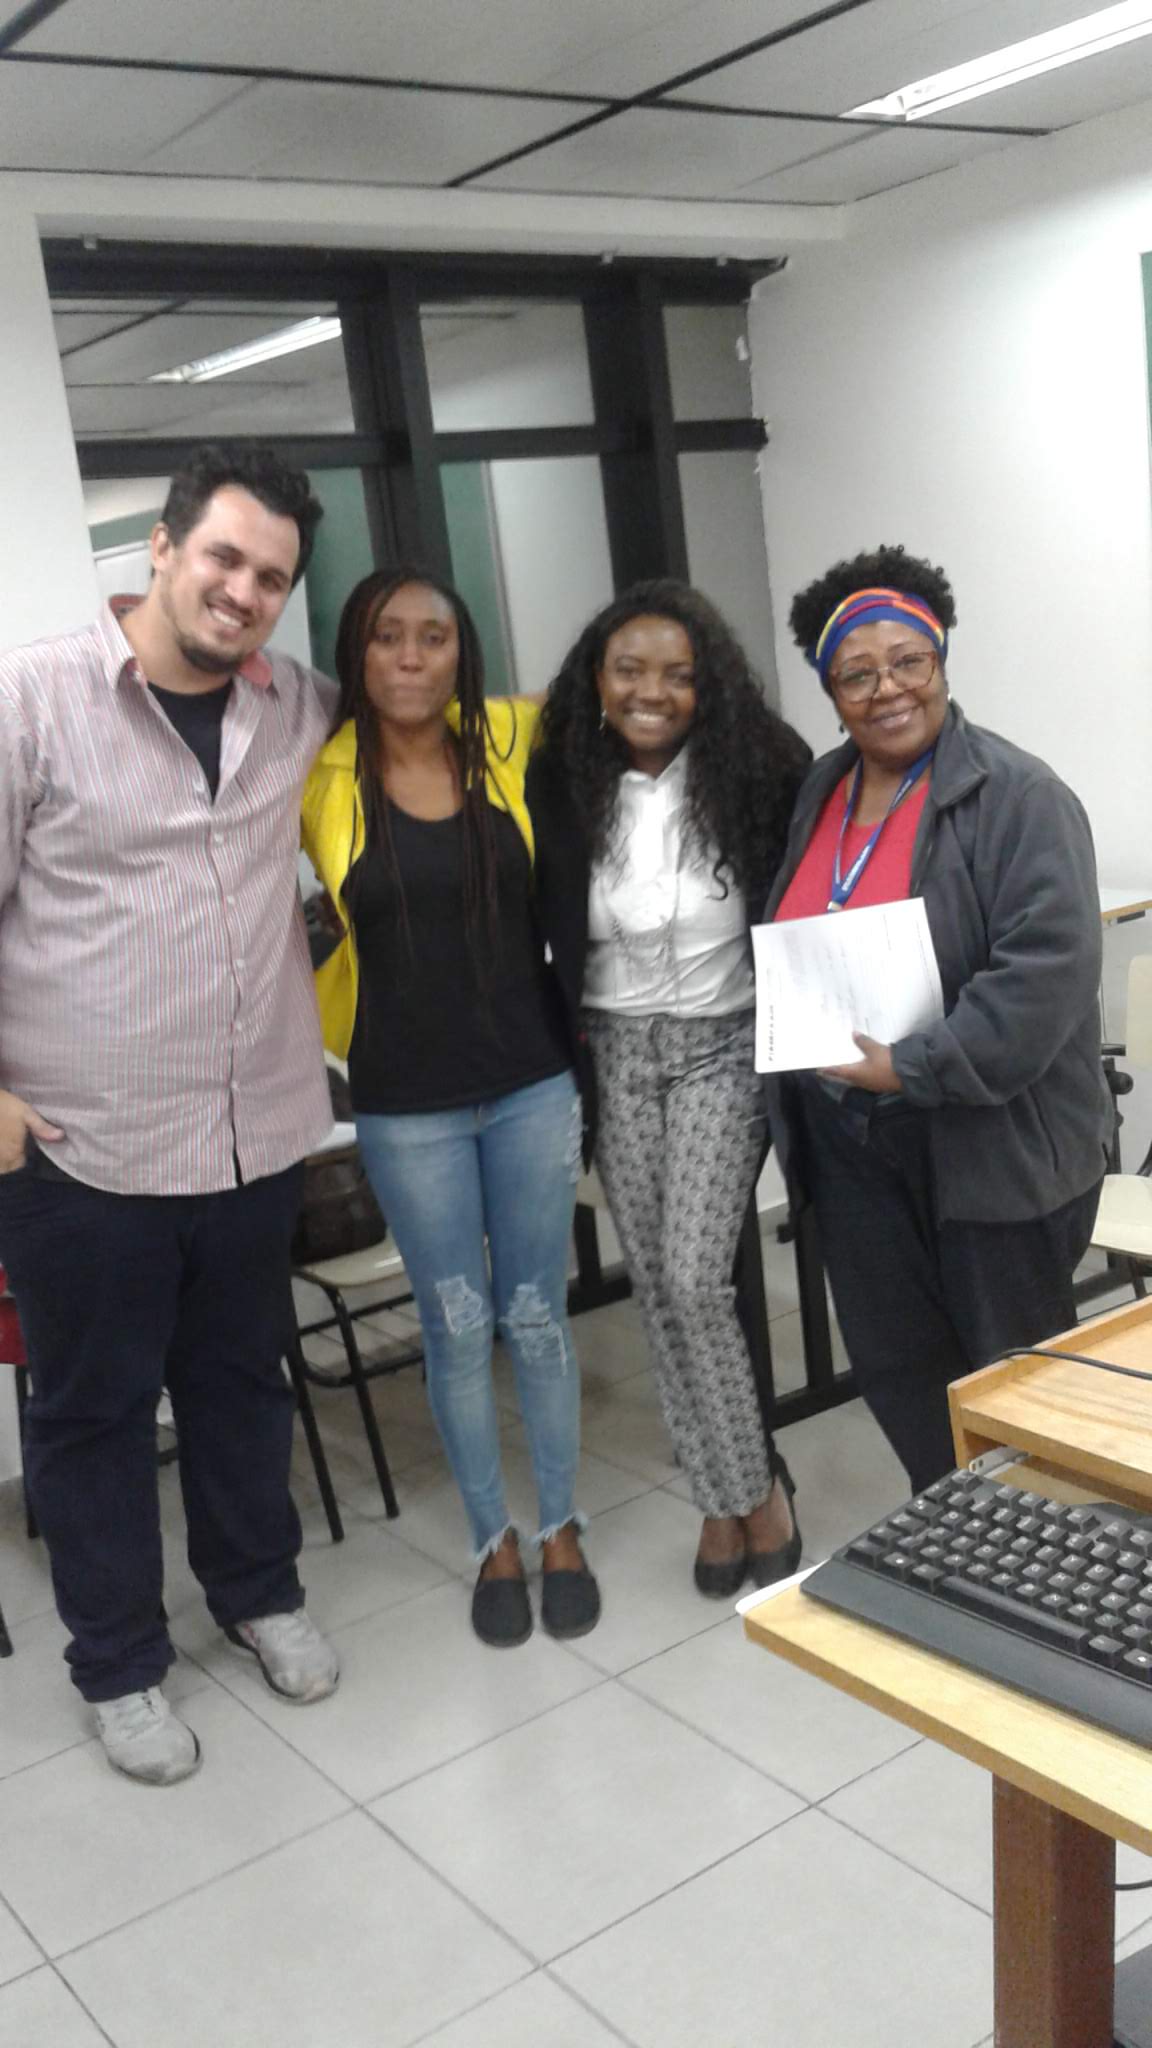 Negros no Telejornalismo – As estratégias dos estudantes de jornalismo para acessar o mercado de trabalho televisivo